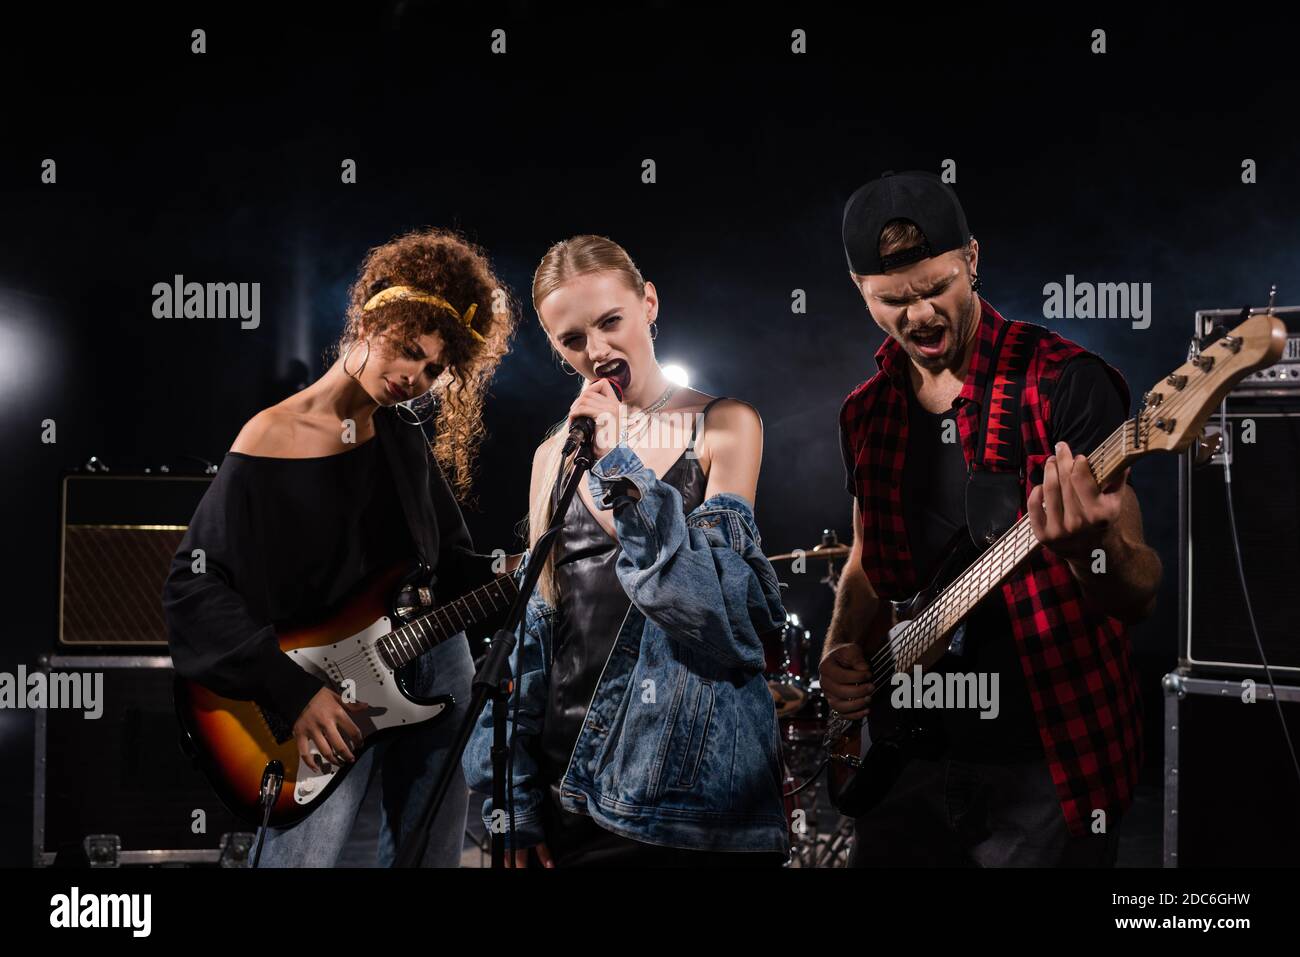 KIEW, UKRAINE - 25. AUGUST 2020: Blonde Sängerin der Rockband singt neben Musikern mit Bass-Gitarren mit Hintergrundbeleuchtung auf schwarz Stockfoto